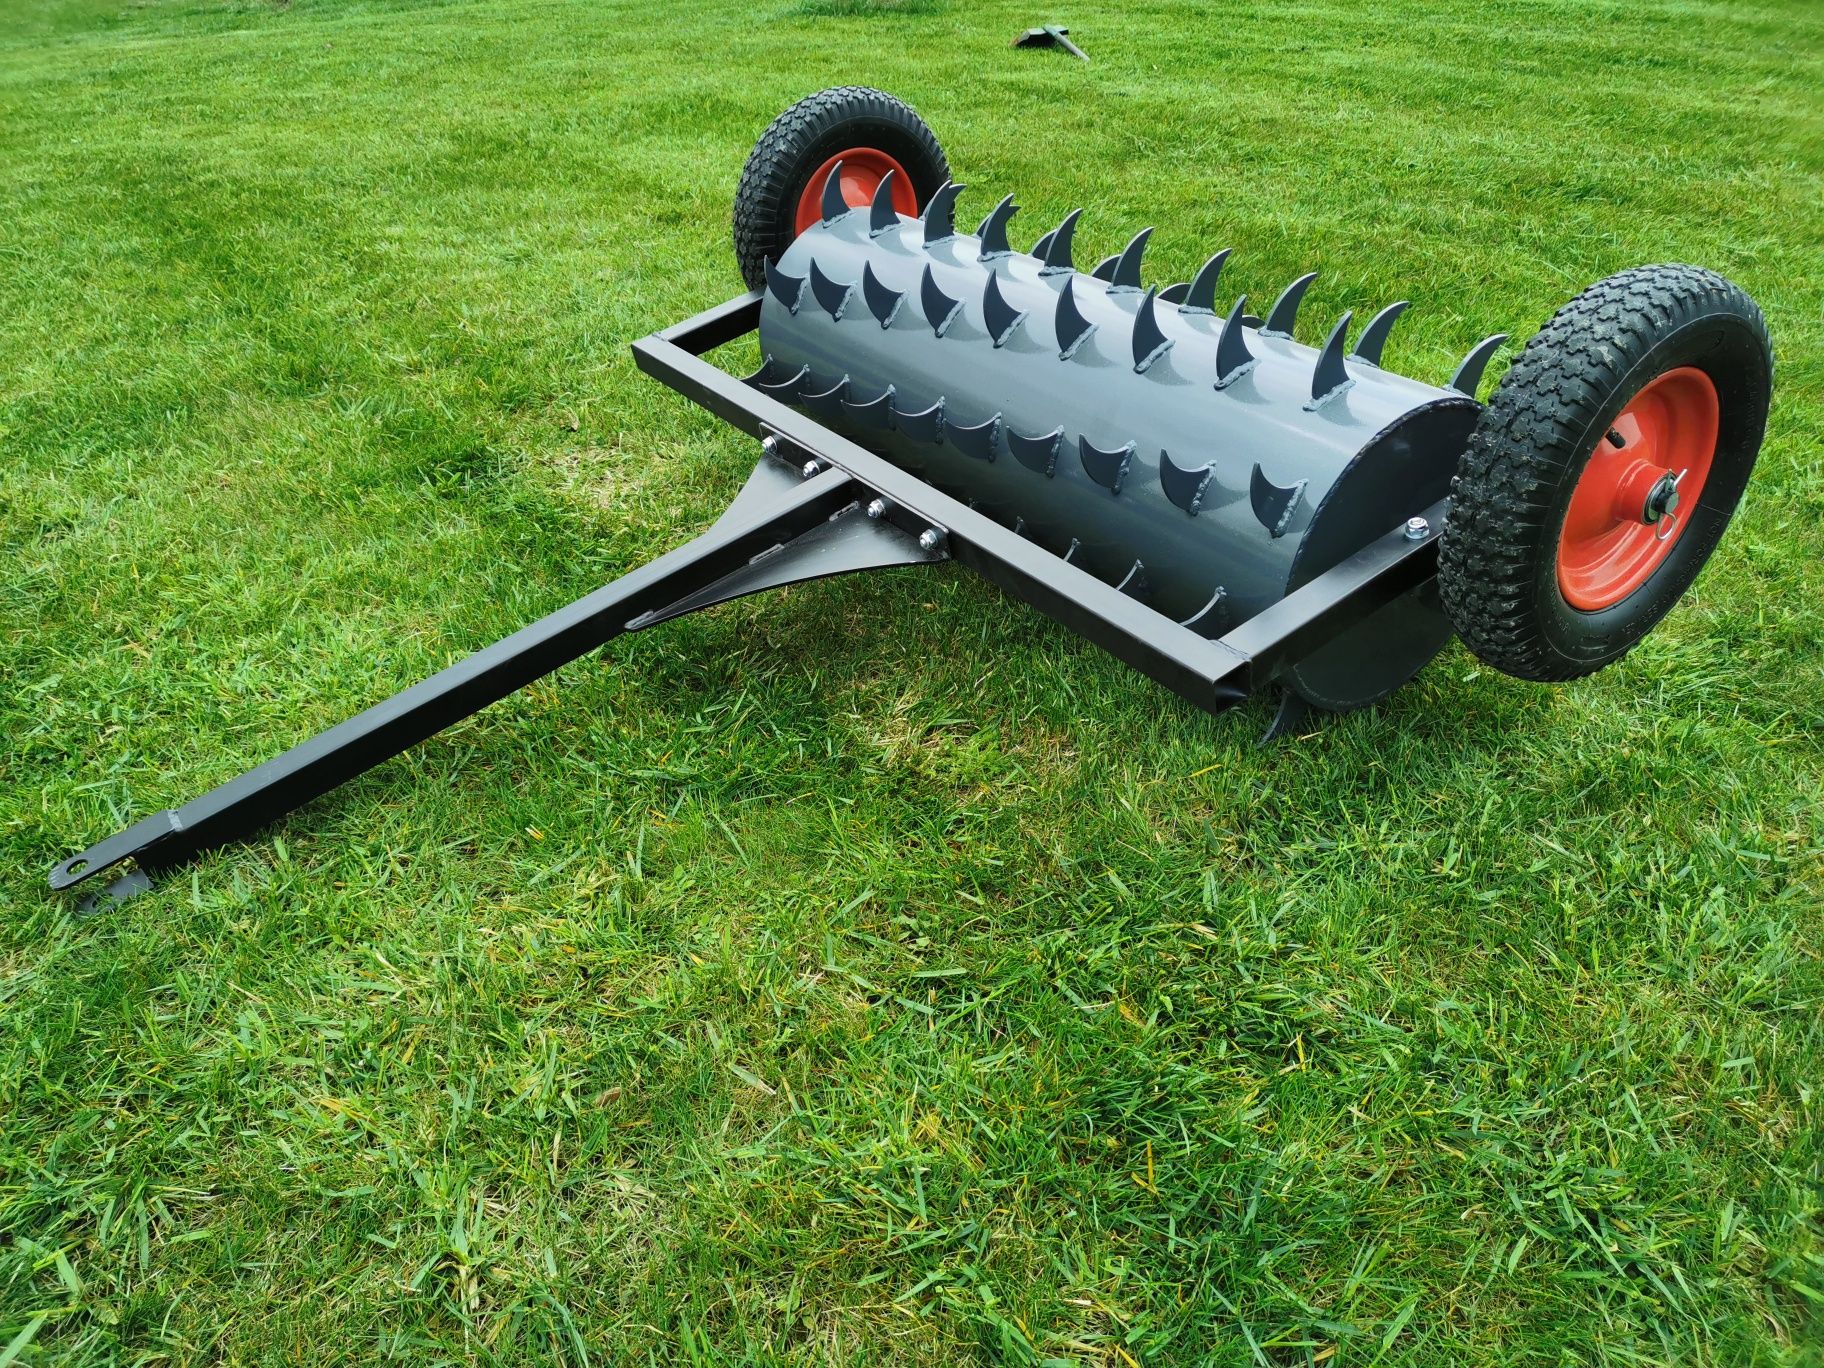 Walec ogrodowy zębaty aerator do traktorka kosiarki